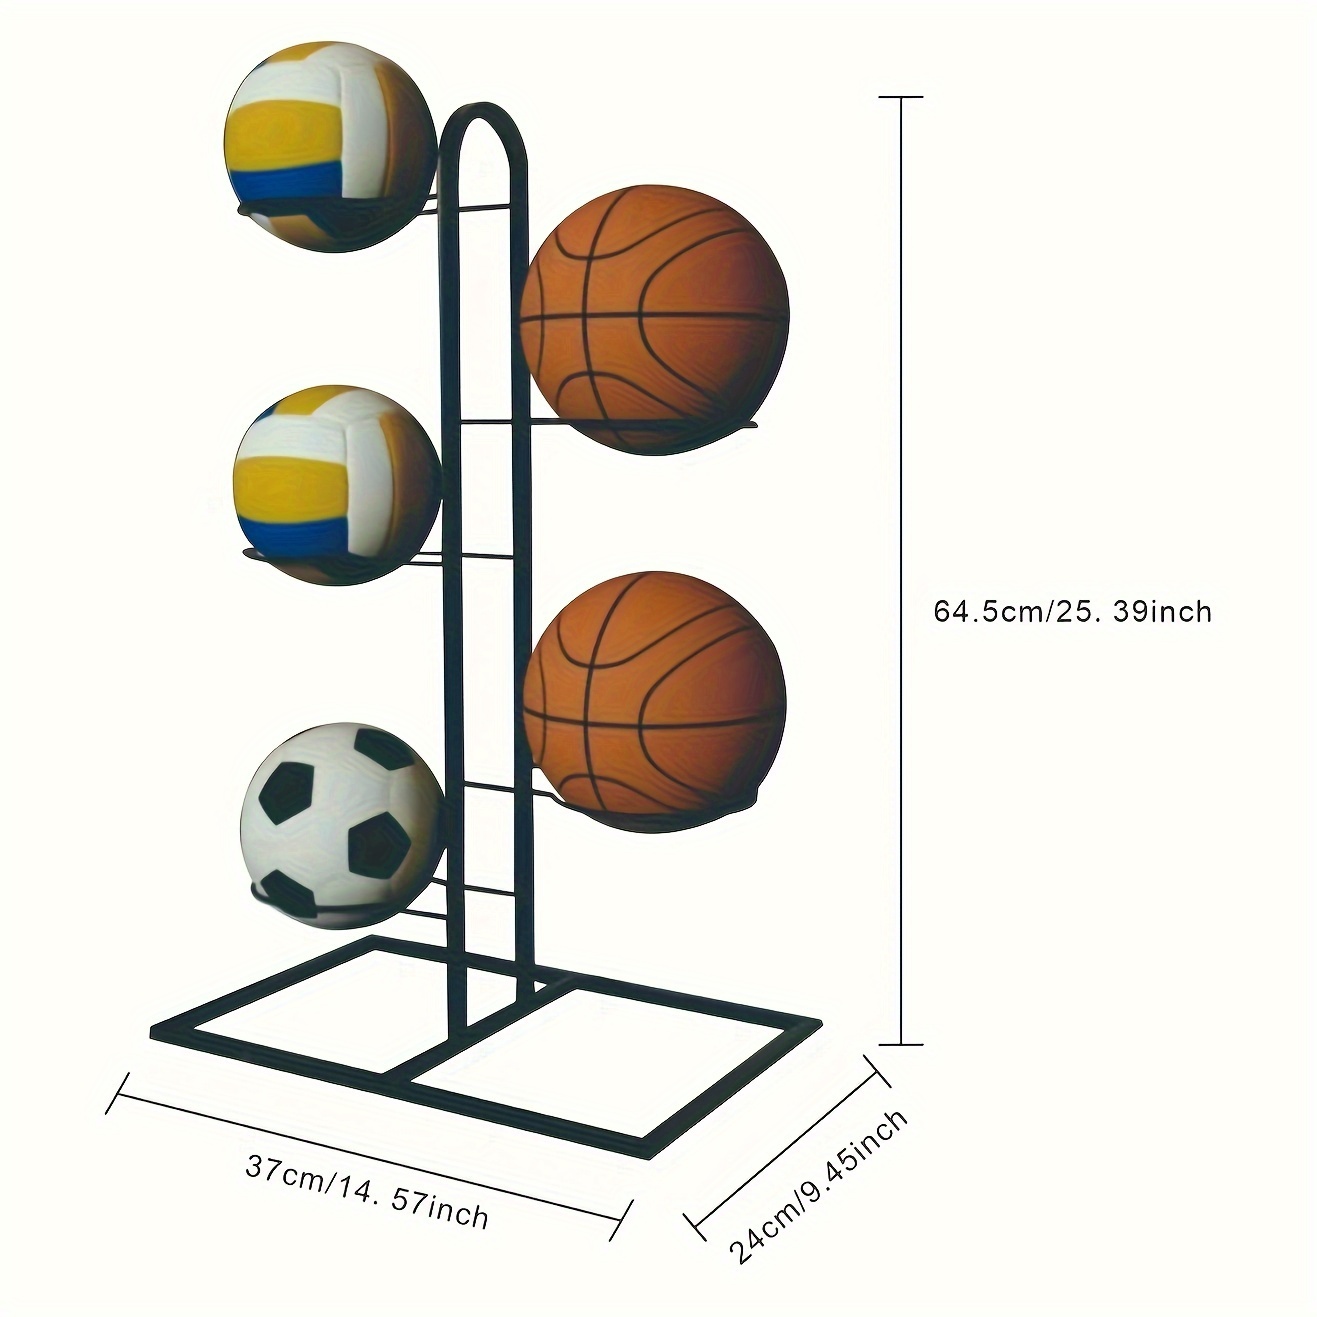 OUSIKA 2pcs support de football présentoir de basket-ball support mural  panier de basket étagère de rangement murale support de balle support de  balle de sport support de stockage de balle tenture mur 